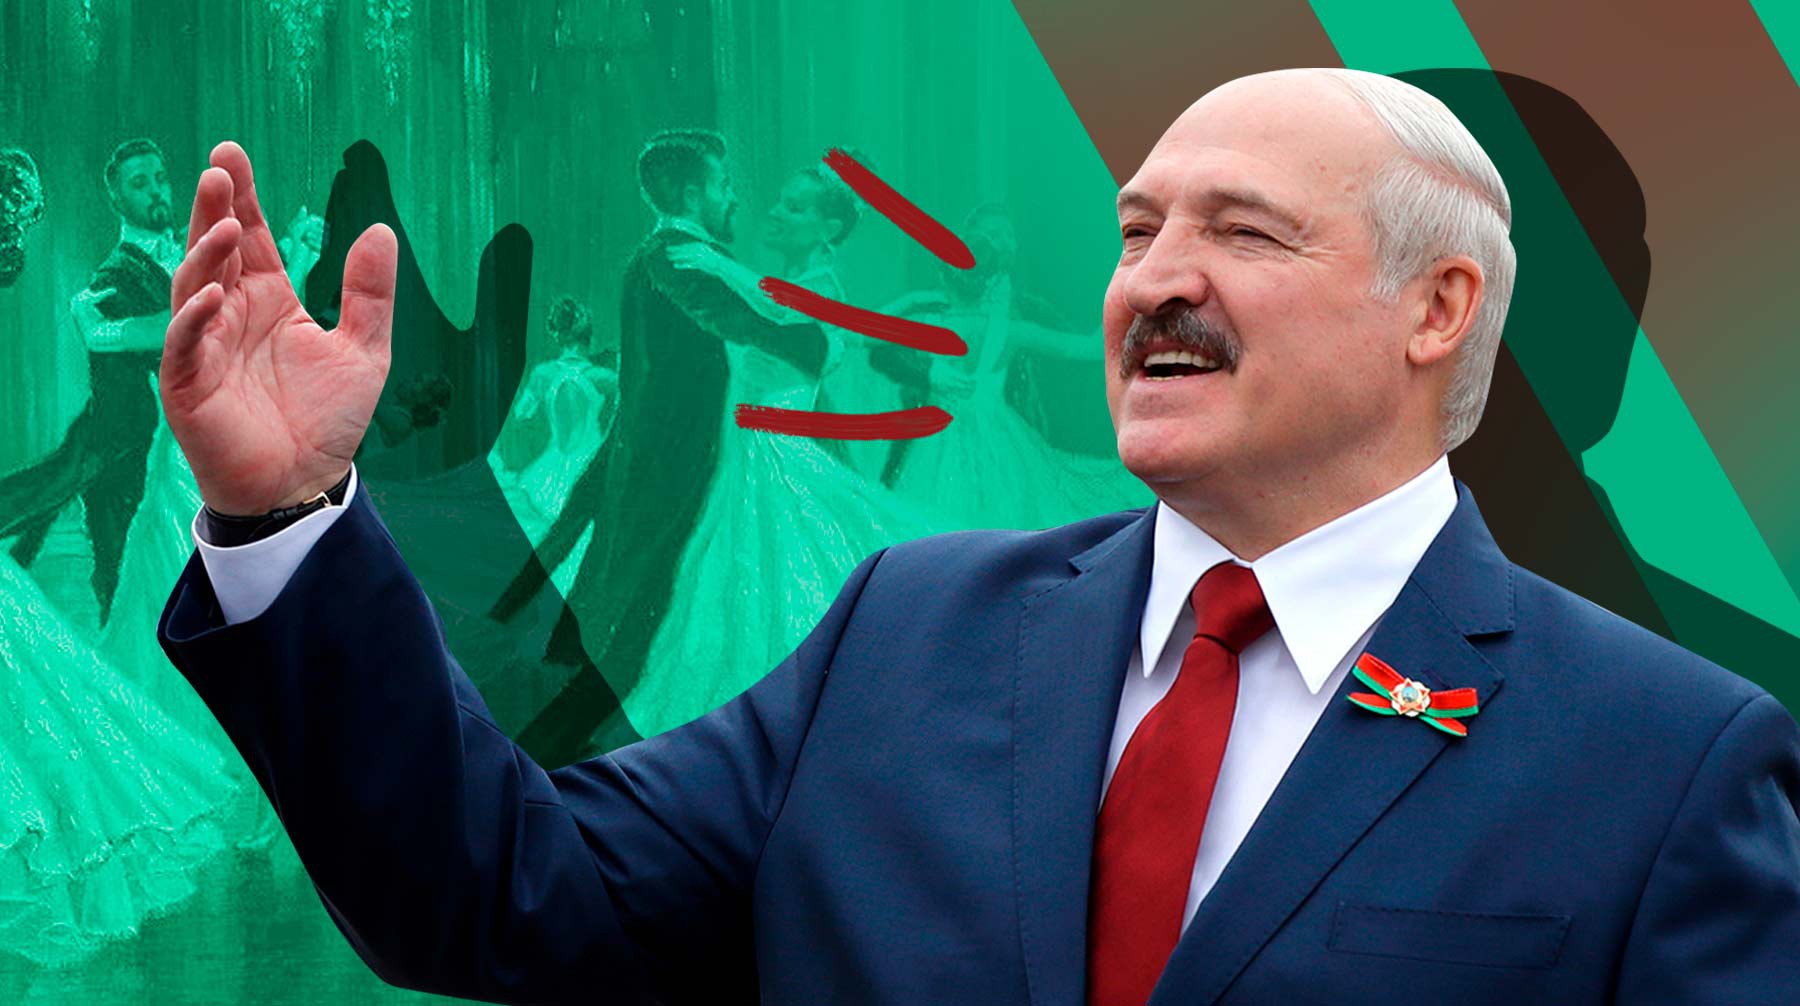 Рука на голой спине: Лукашенко станцевал вальс с юной студенткой